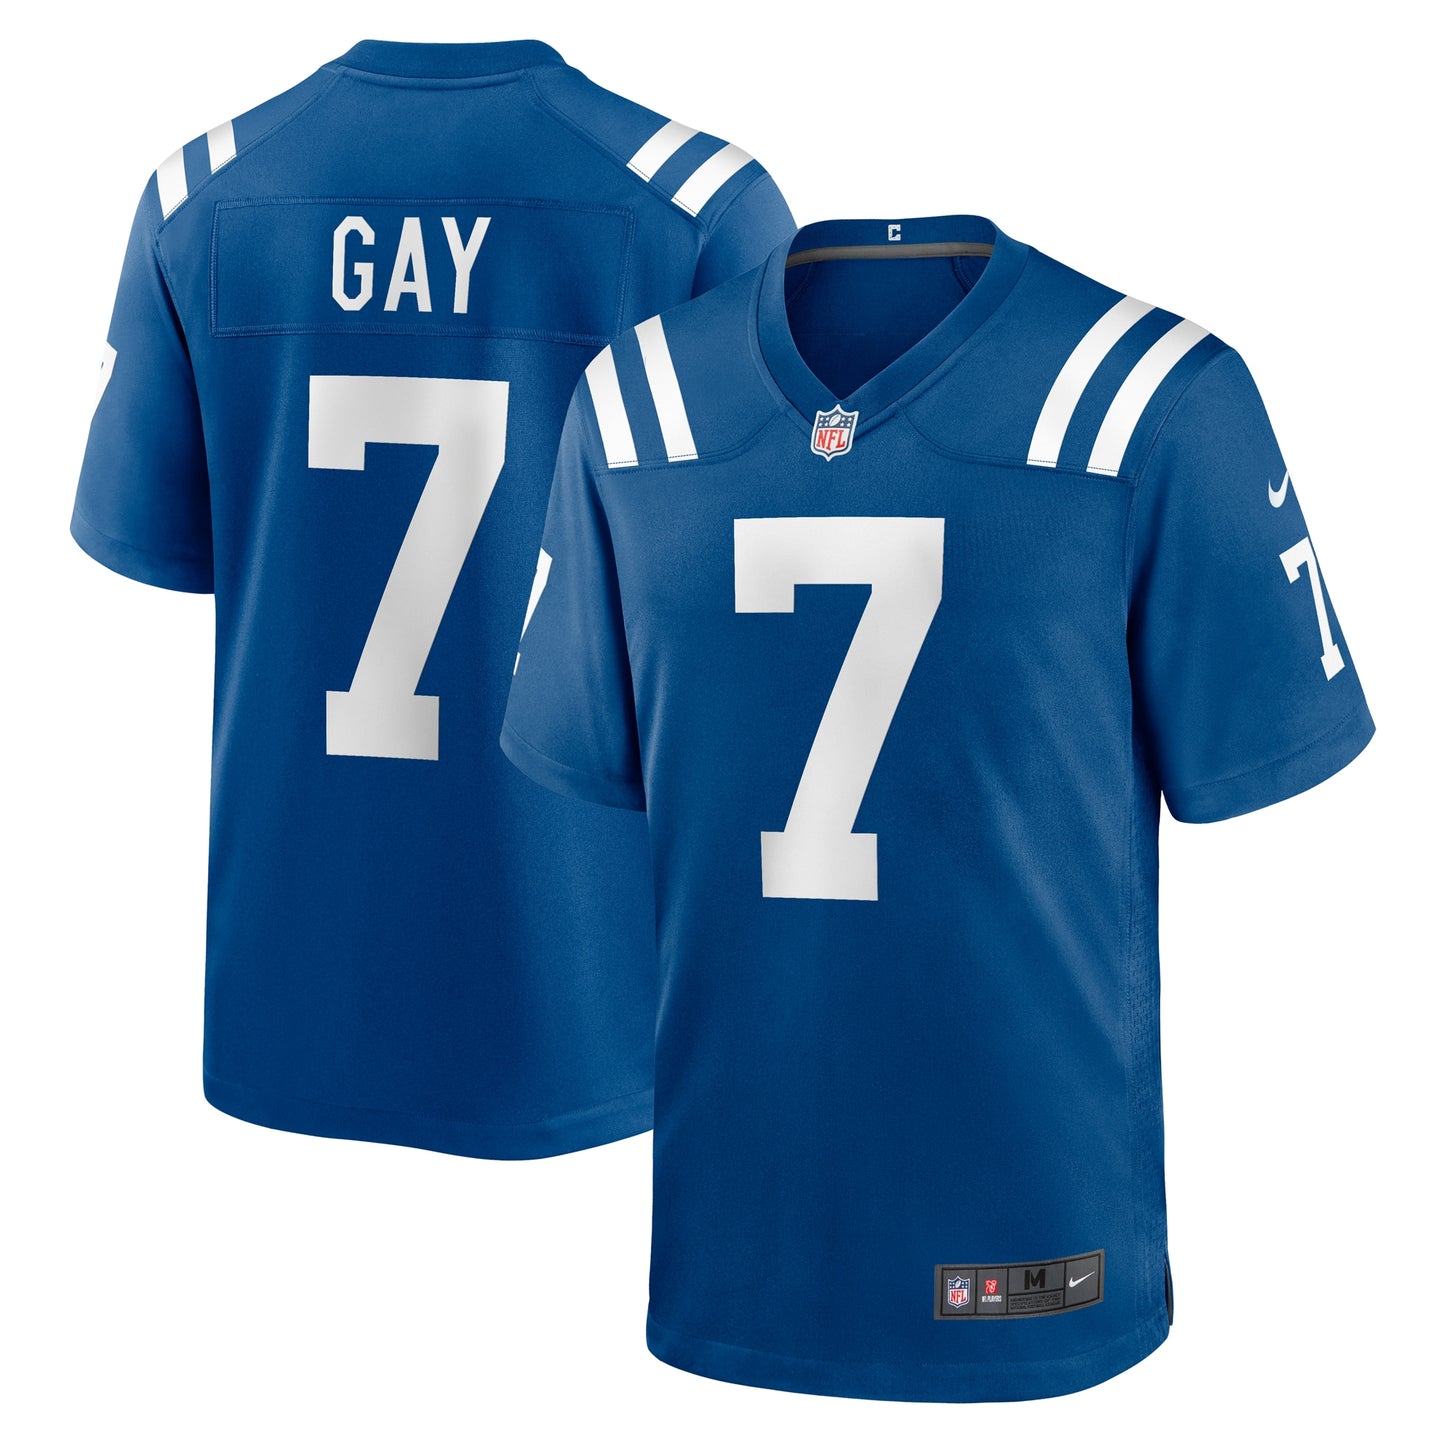 Matt Gay Indianapolis Colts Nike Team Game Jersey - Royal